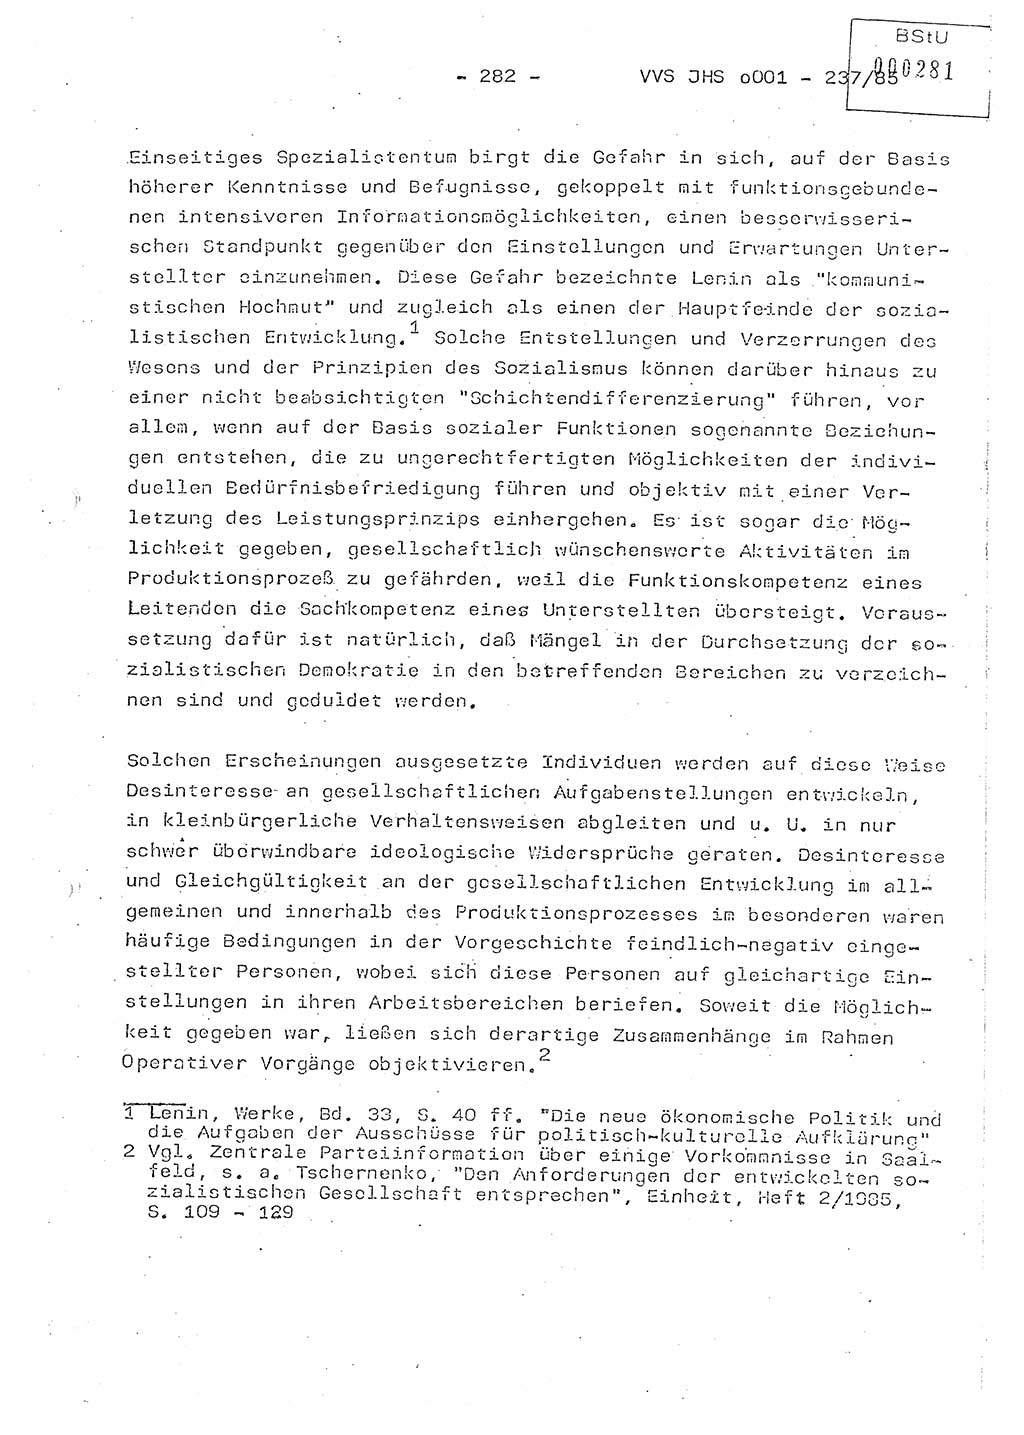 Dissertation Oberstleutnant Peter Jakulski (JHS), Oberstleutnat Christian Rudolph (HA Ⅸ), Major Horst Böttger (ZMD), Major Wolfgang Grüneberg (JHS), Major Albert Meutsch (JHS), Ministerium für Staatssicherheit (MfS) [Deutsche Demokratische Republik (DDR)], Juristische Hochschule (JHS), Vertrauliche Verschlußsache (VVS) o001-237/85, Potsdam 1985, Seite 282 (Diss. MfS DDR JHS VVS o001-237/85 1985, S. 282)